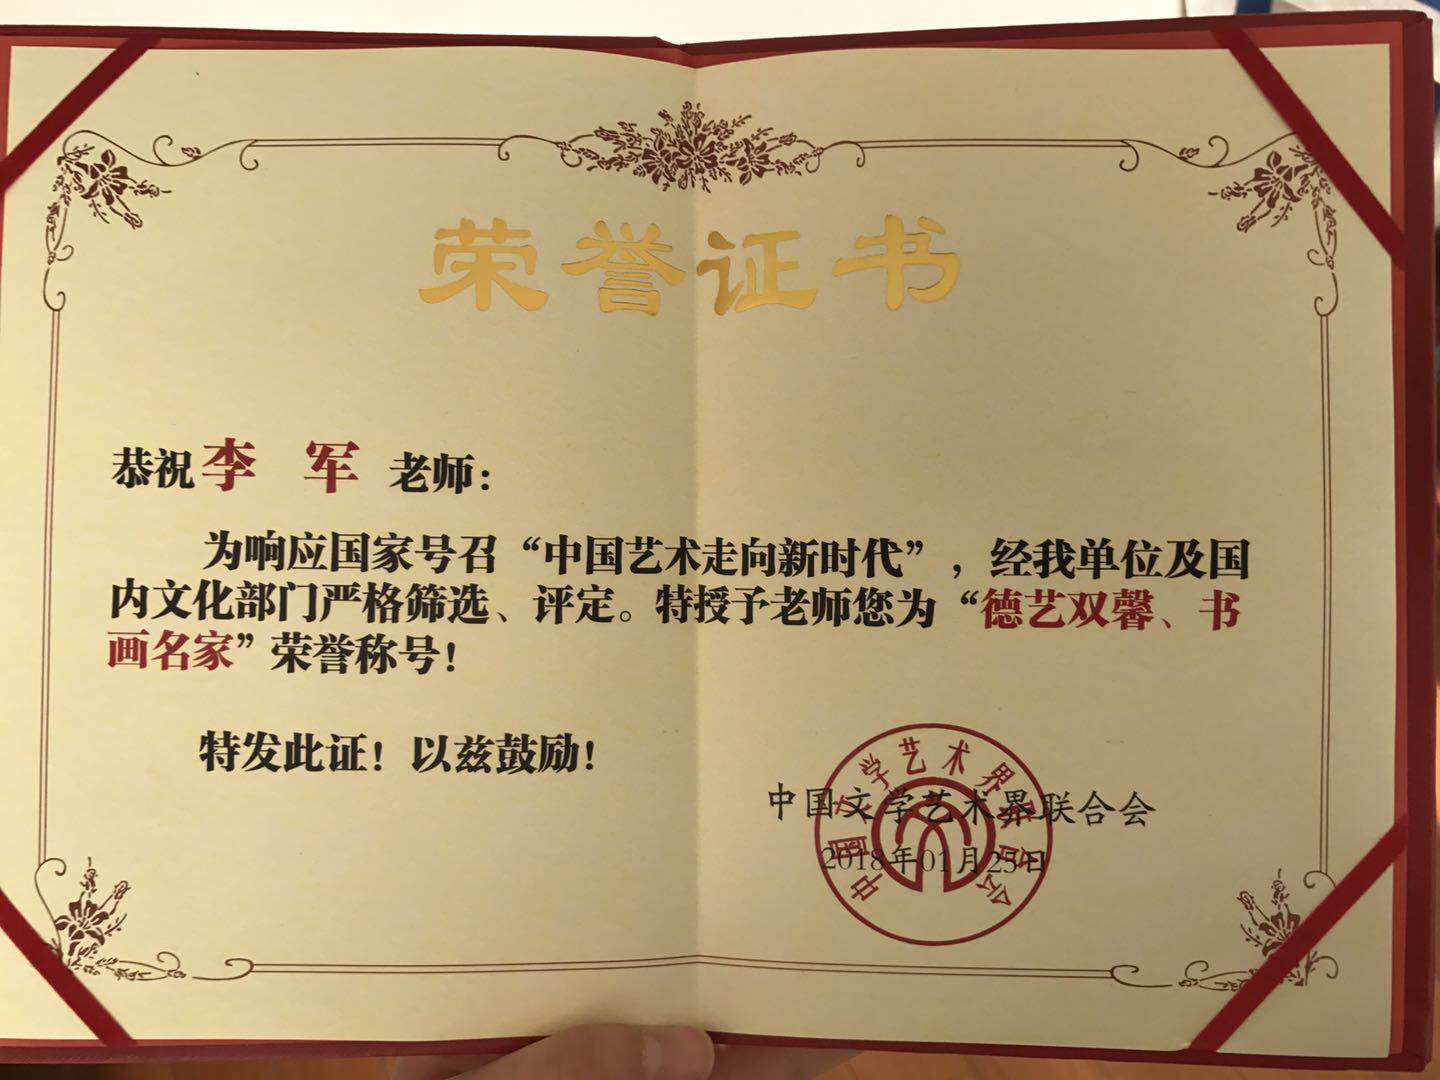 李军老师被中国文联授予德艺双馨,书画名家荣誉称号